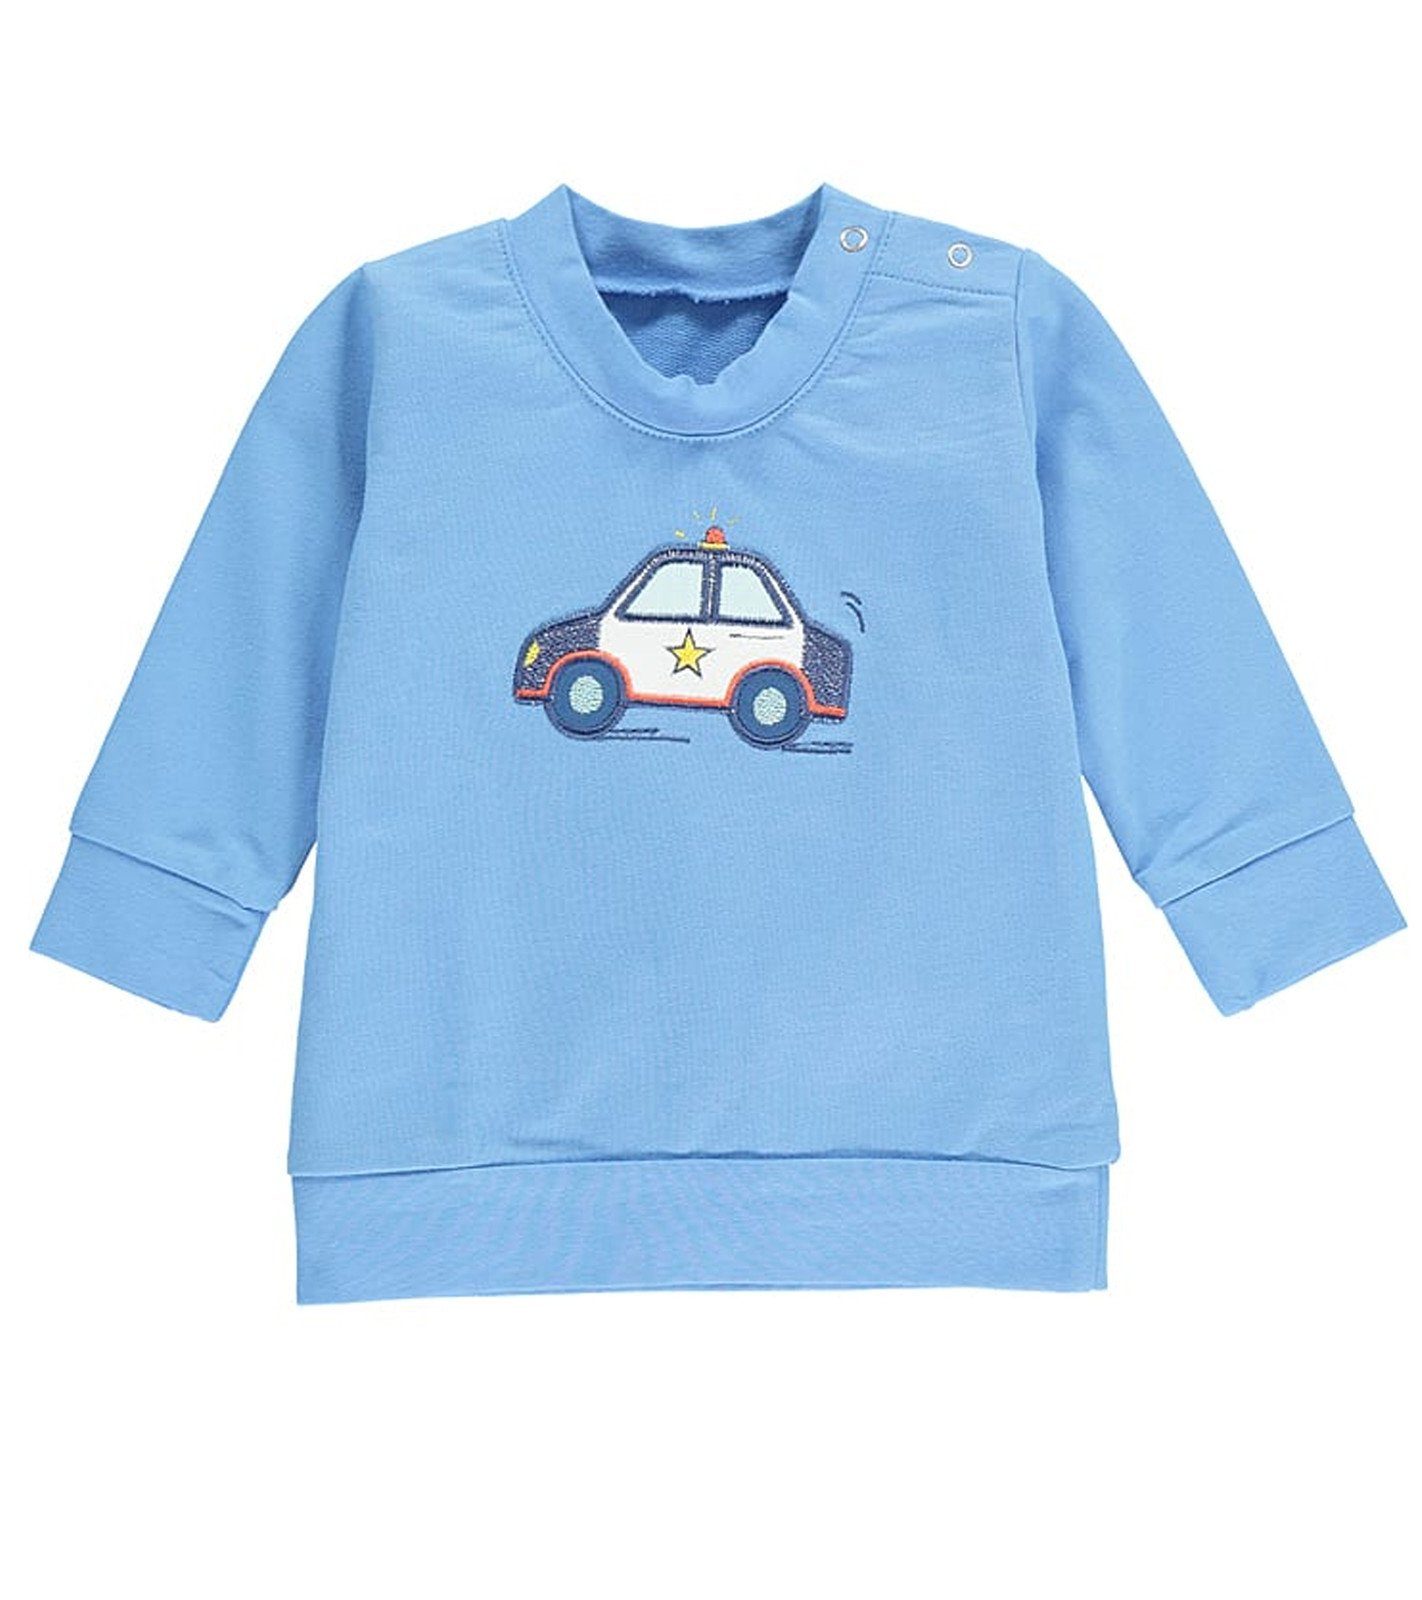 coolem Polizei-Aufdruck lamino Sweatshirt Blau Freizeit-Pulli mit Kinder Pullover niedliches Rundhalsshirt lamino